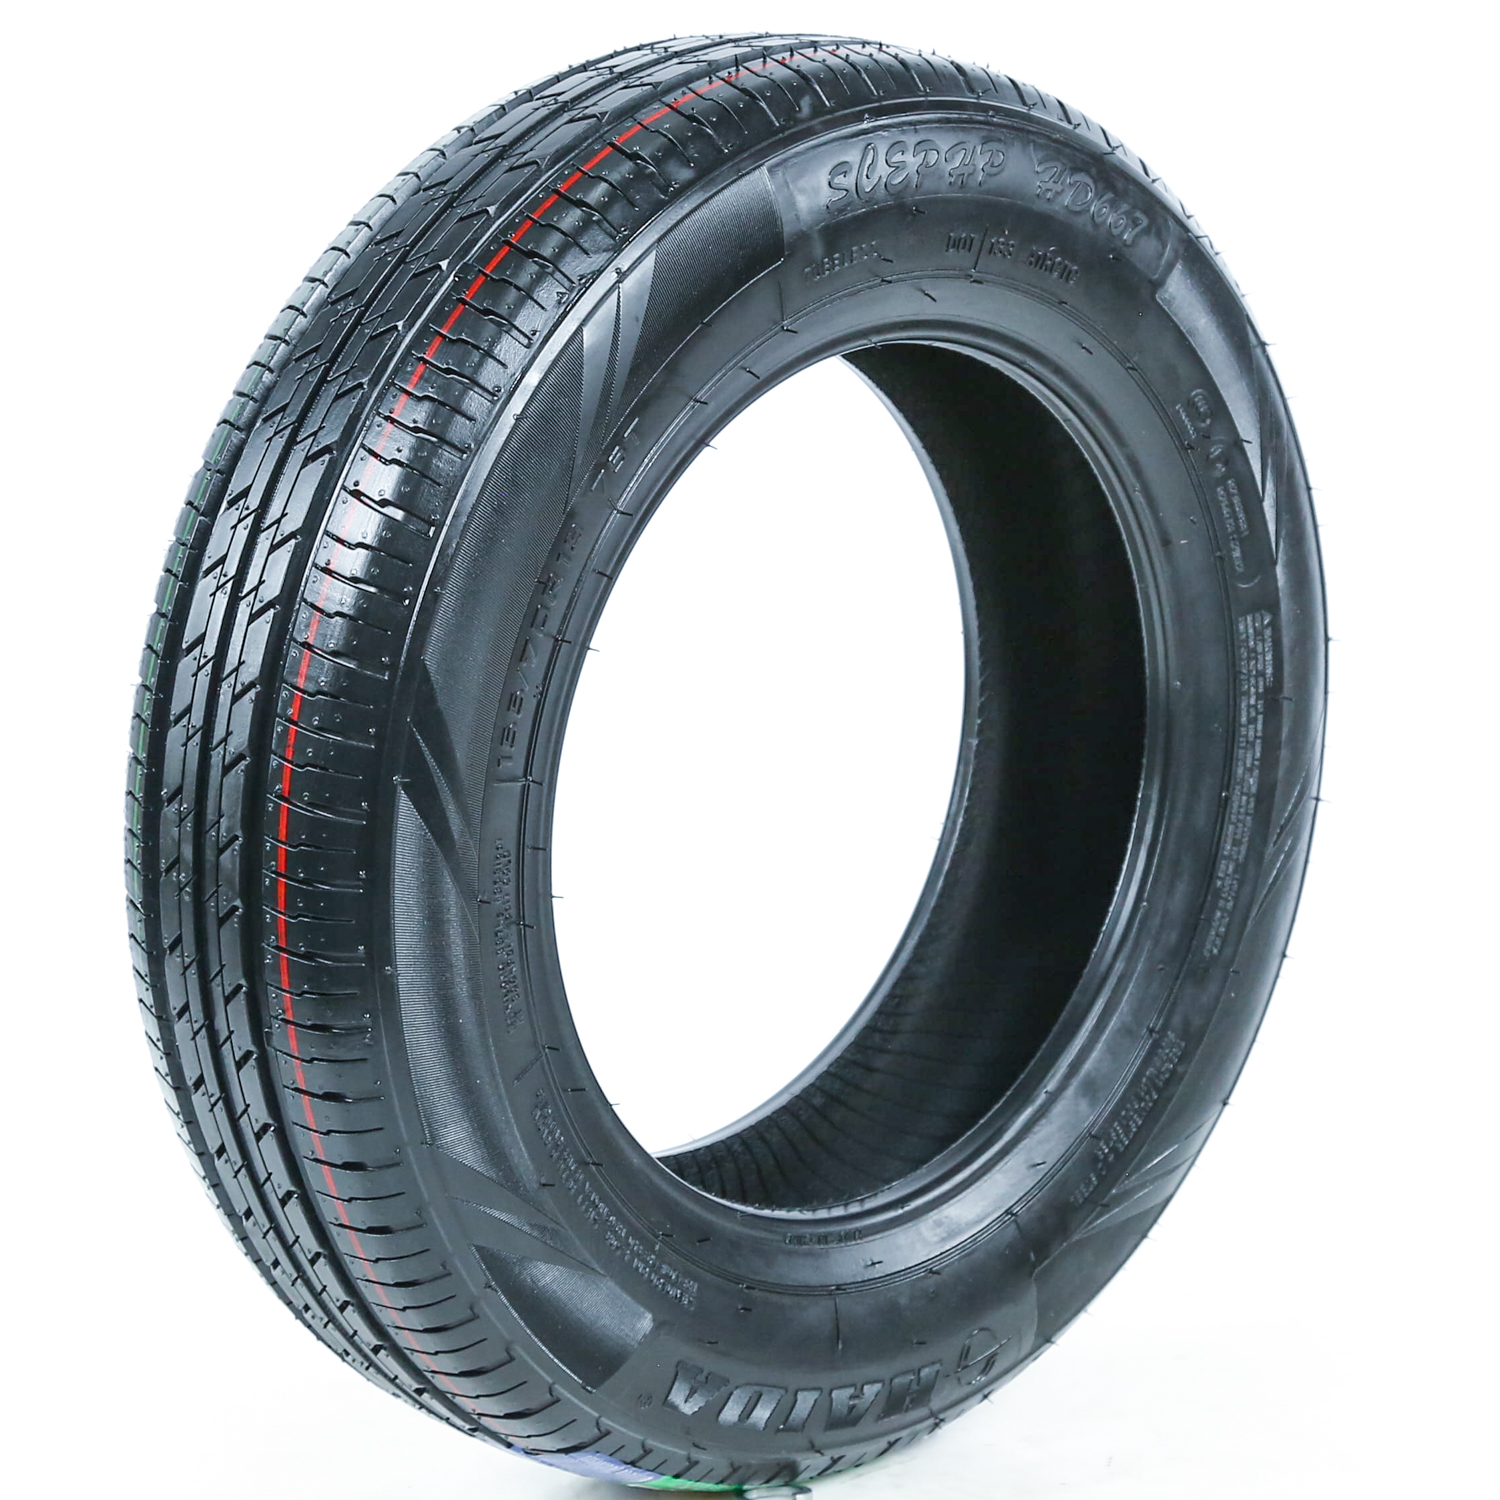 Haida HD667 All-Season Touring Radial Tire-205/55R16 205/55/16 205/55-16  91V Load Range SL 4-Ply BSW Black Side Wall